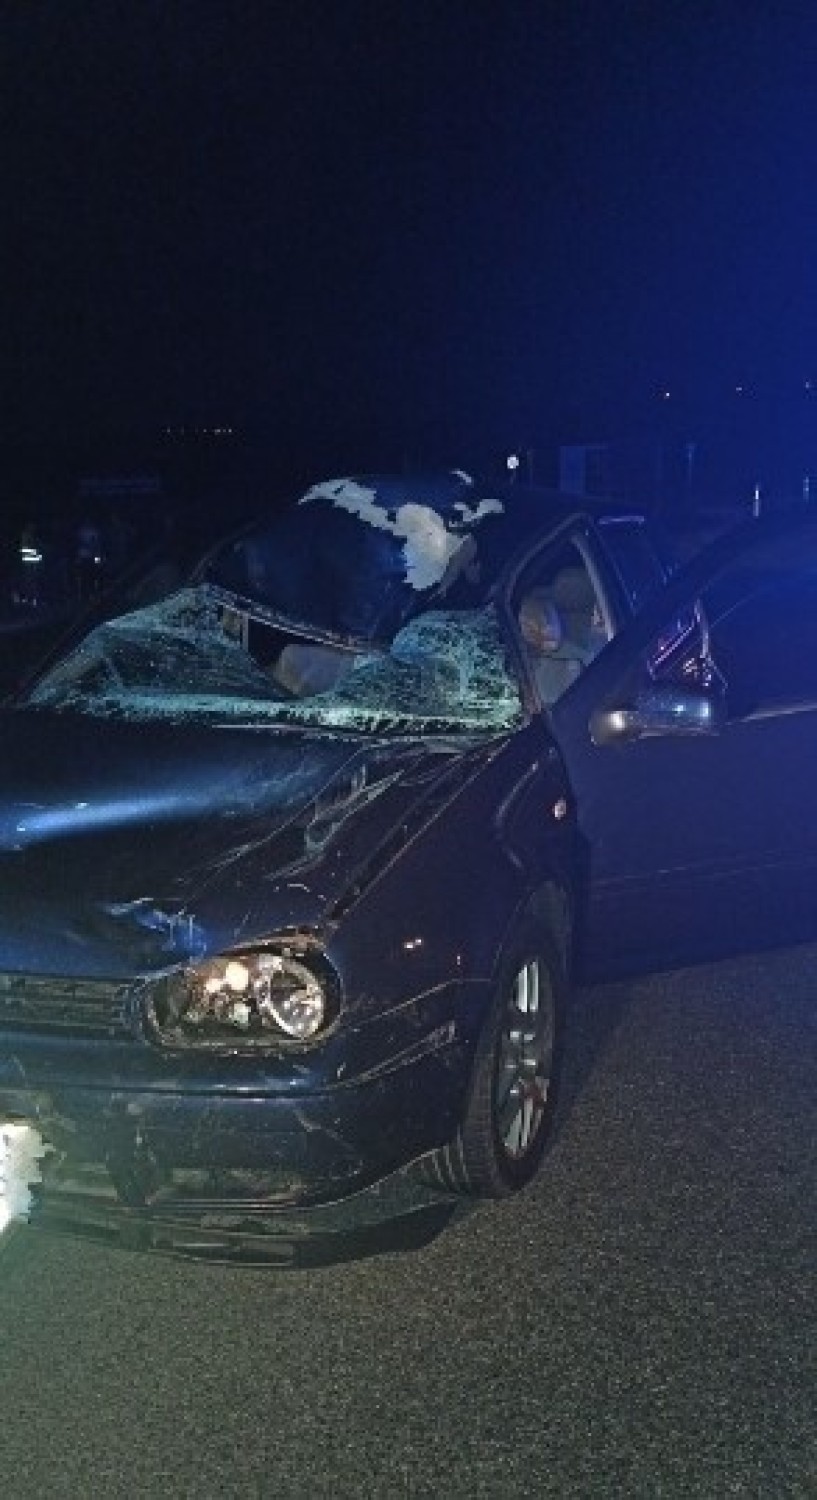 Tragiczny wypadek w Wojniczu. Nie żyje 63-latek potrącony na drodze